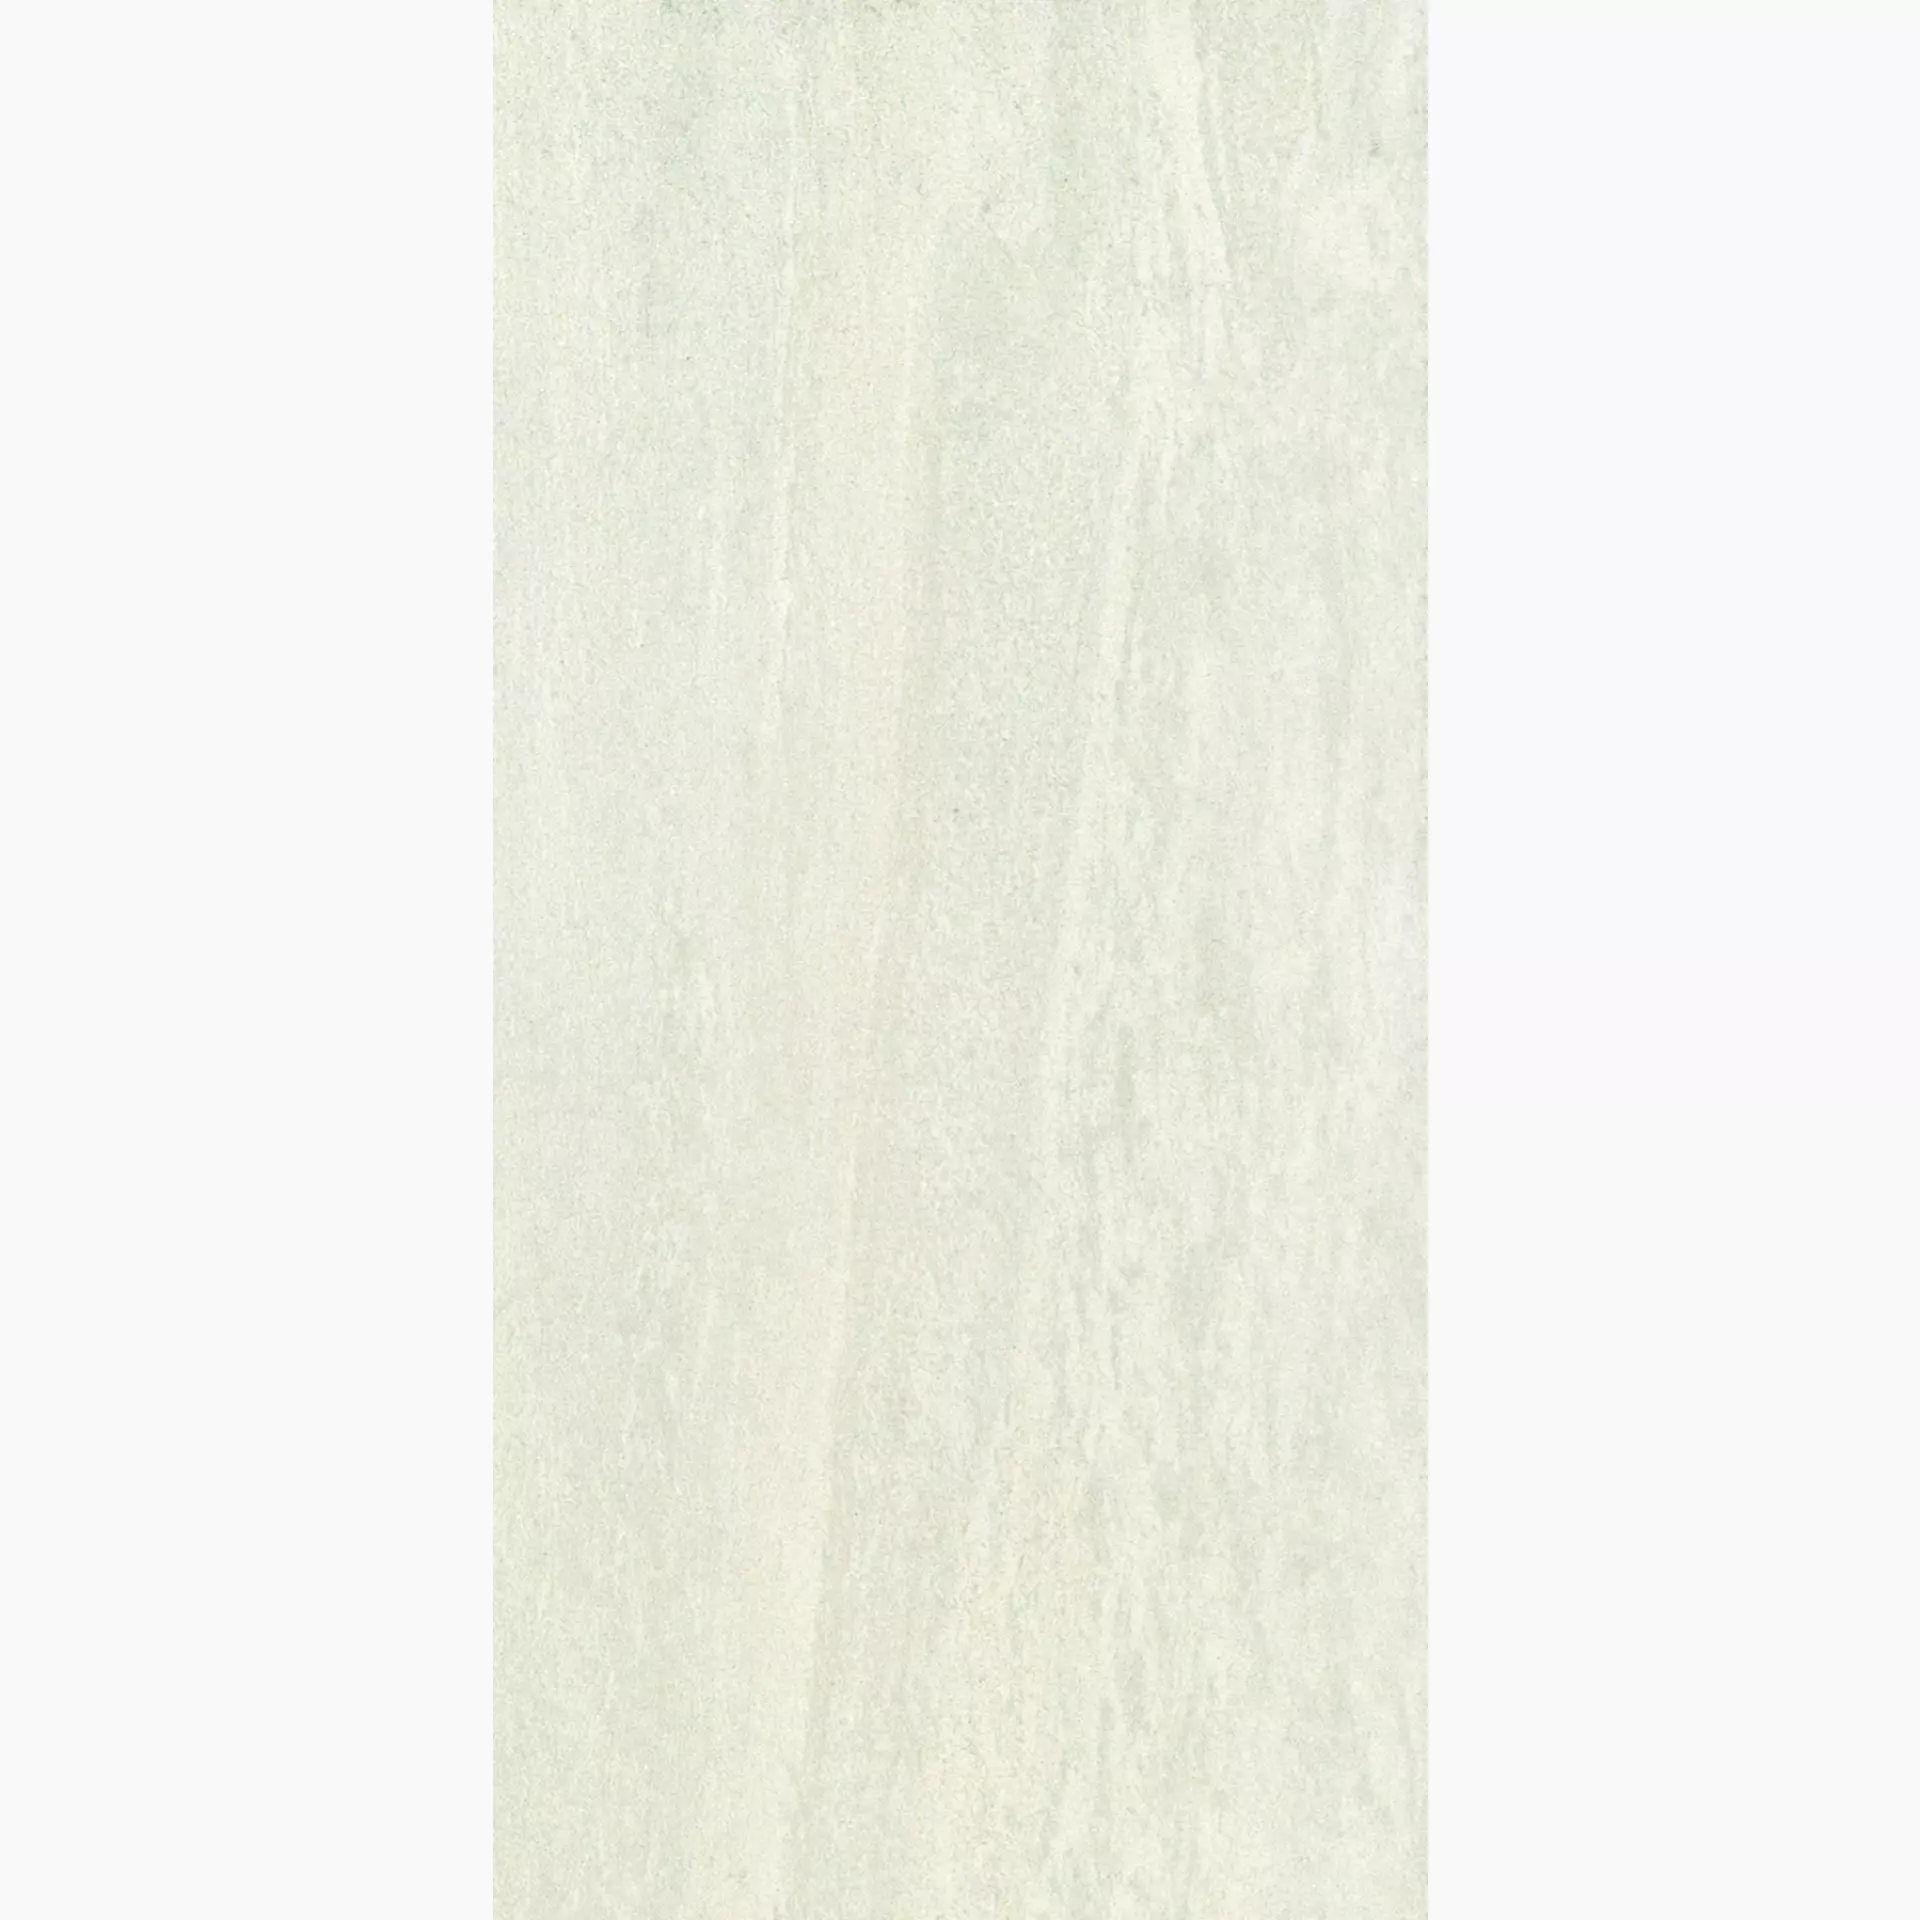 Ergon Stone Project White Naturale Falda E1DD 30x60cm rectified 9,5mm